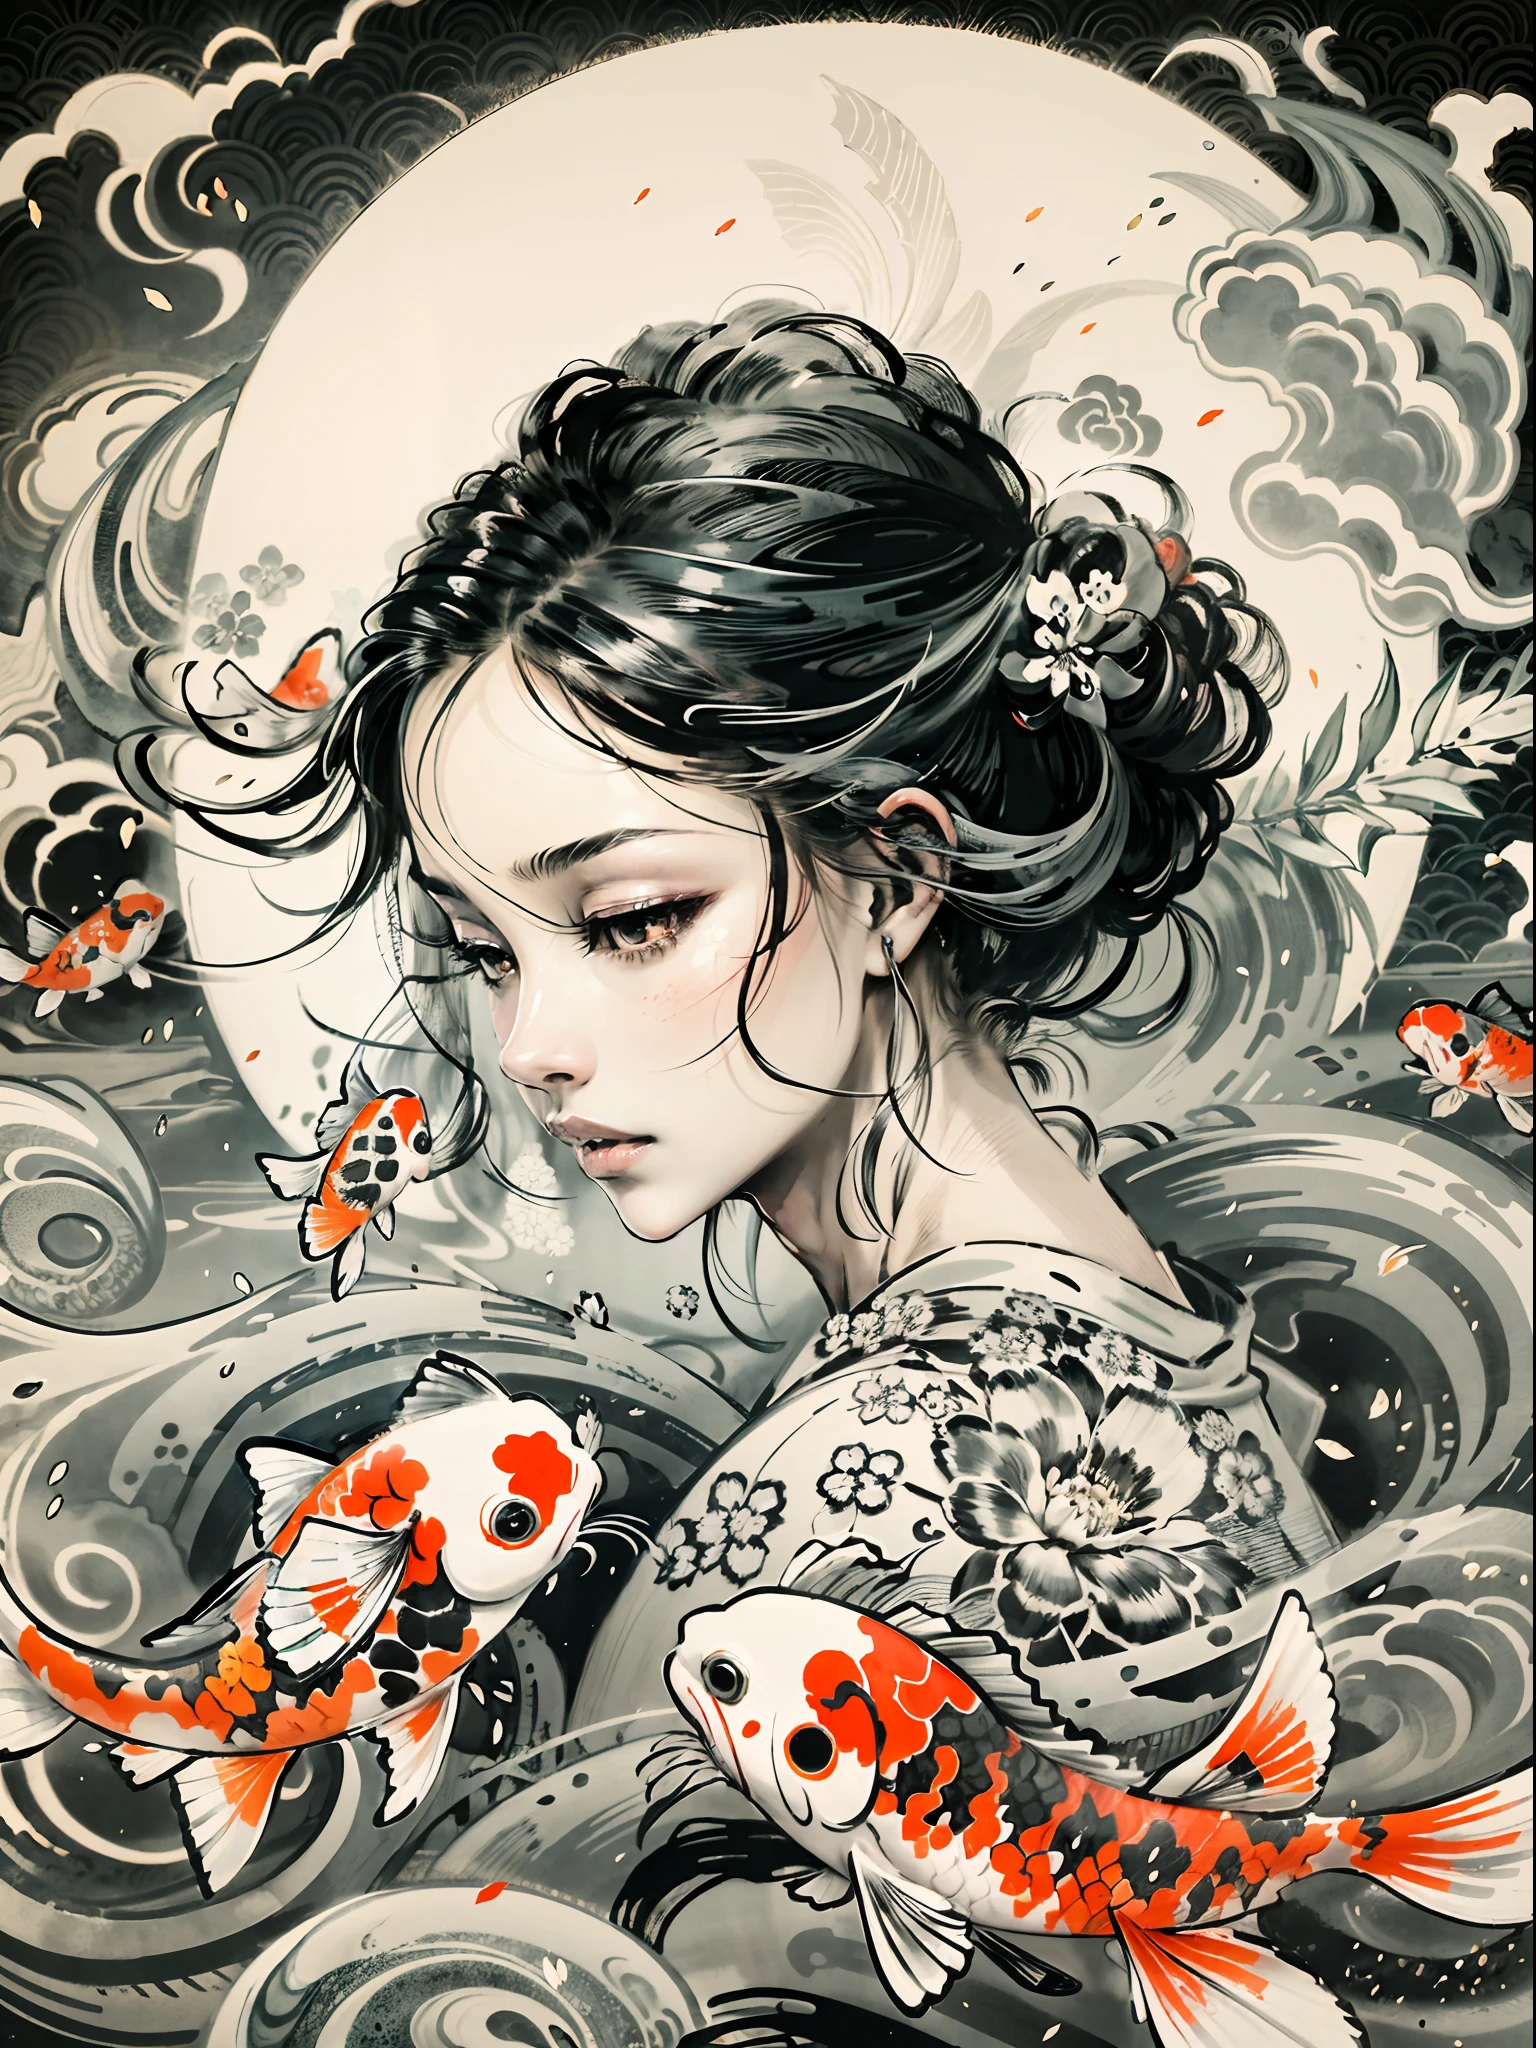 "Une représentation fascinante d&#39;élégants poissons koi tourbillonnant gracieusement autour d&#39;une jeune fille., rappelant une superbe peinture japonaise à l&#39;encre noire et blanche, formant un symbole yin-yang fascinant en arrière-plan."